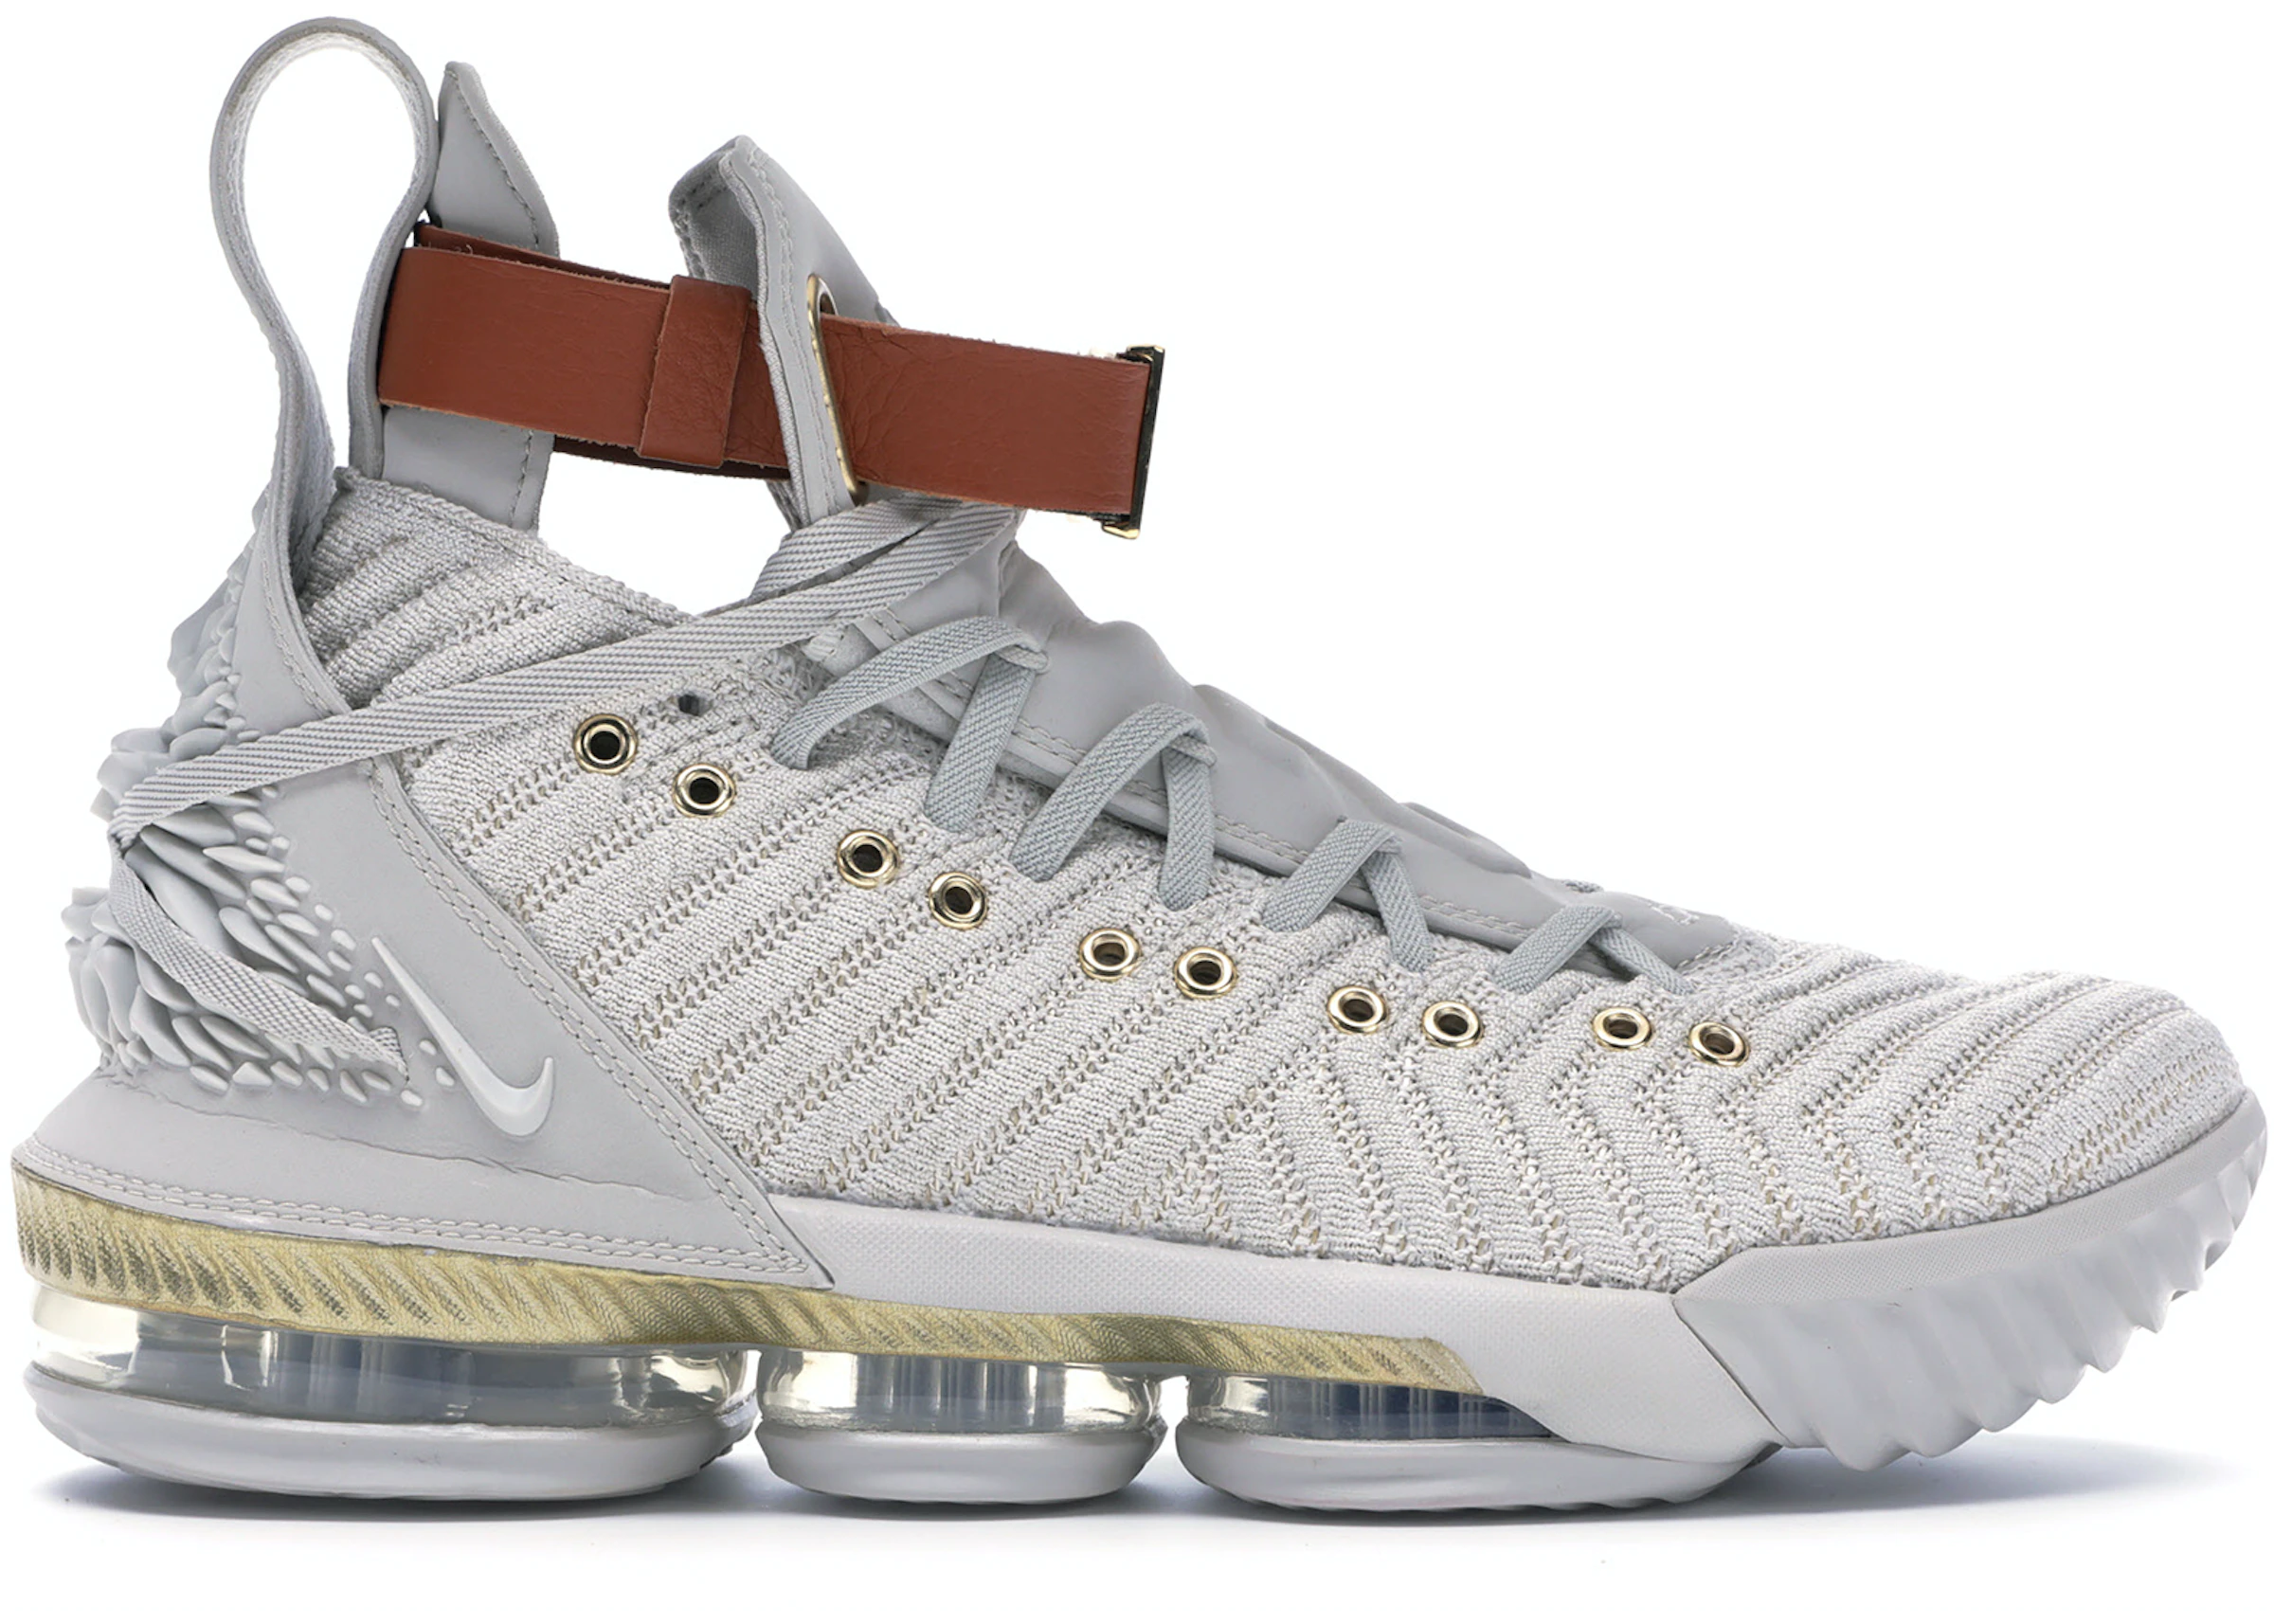 Acostumbrarse a fluido Persuasión Compra Nike LeBron 16 Calzado y sneakers nuevos - StockX